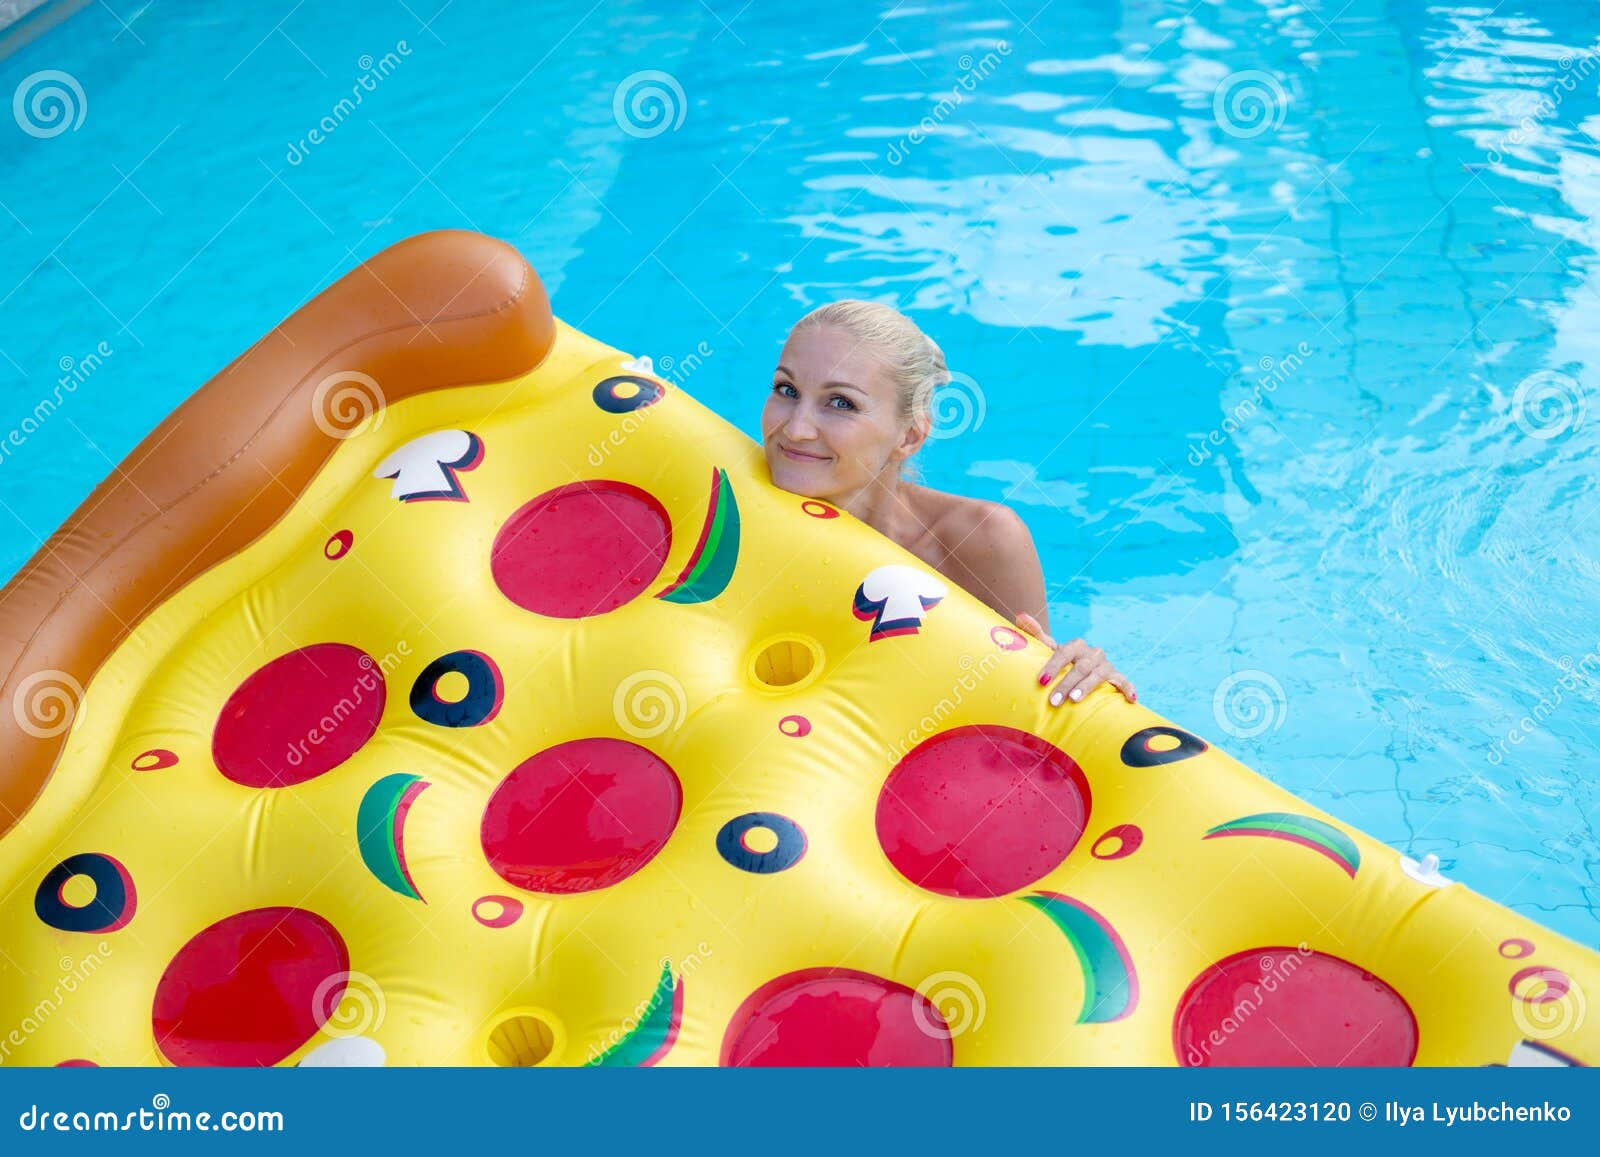 whisky Post impressionisme geduldig Een Mooi Meisje Zit in Een Zwembad Op Een Pizza-achtig Luchtbed in Een  Sjaal Zwempak Stock Foto - Image of banier, matras: 156423120